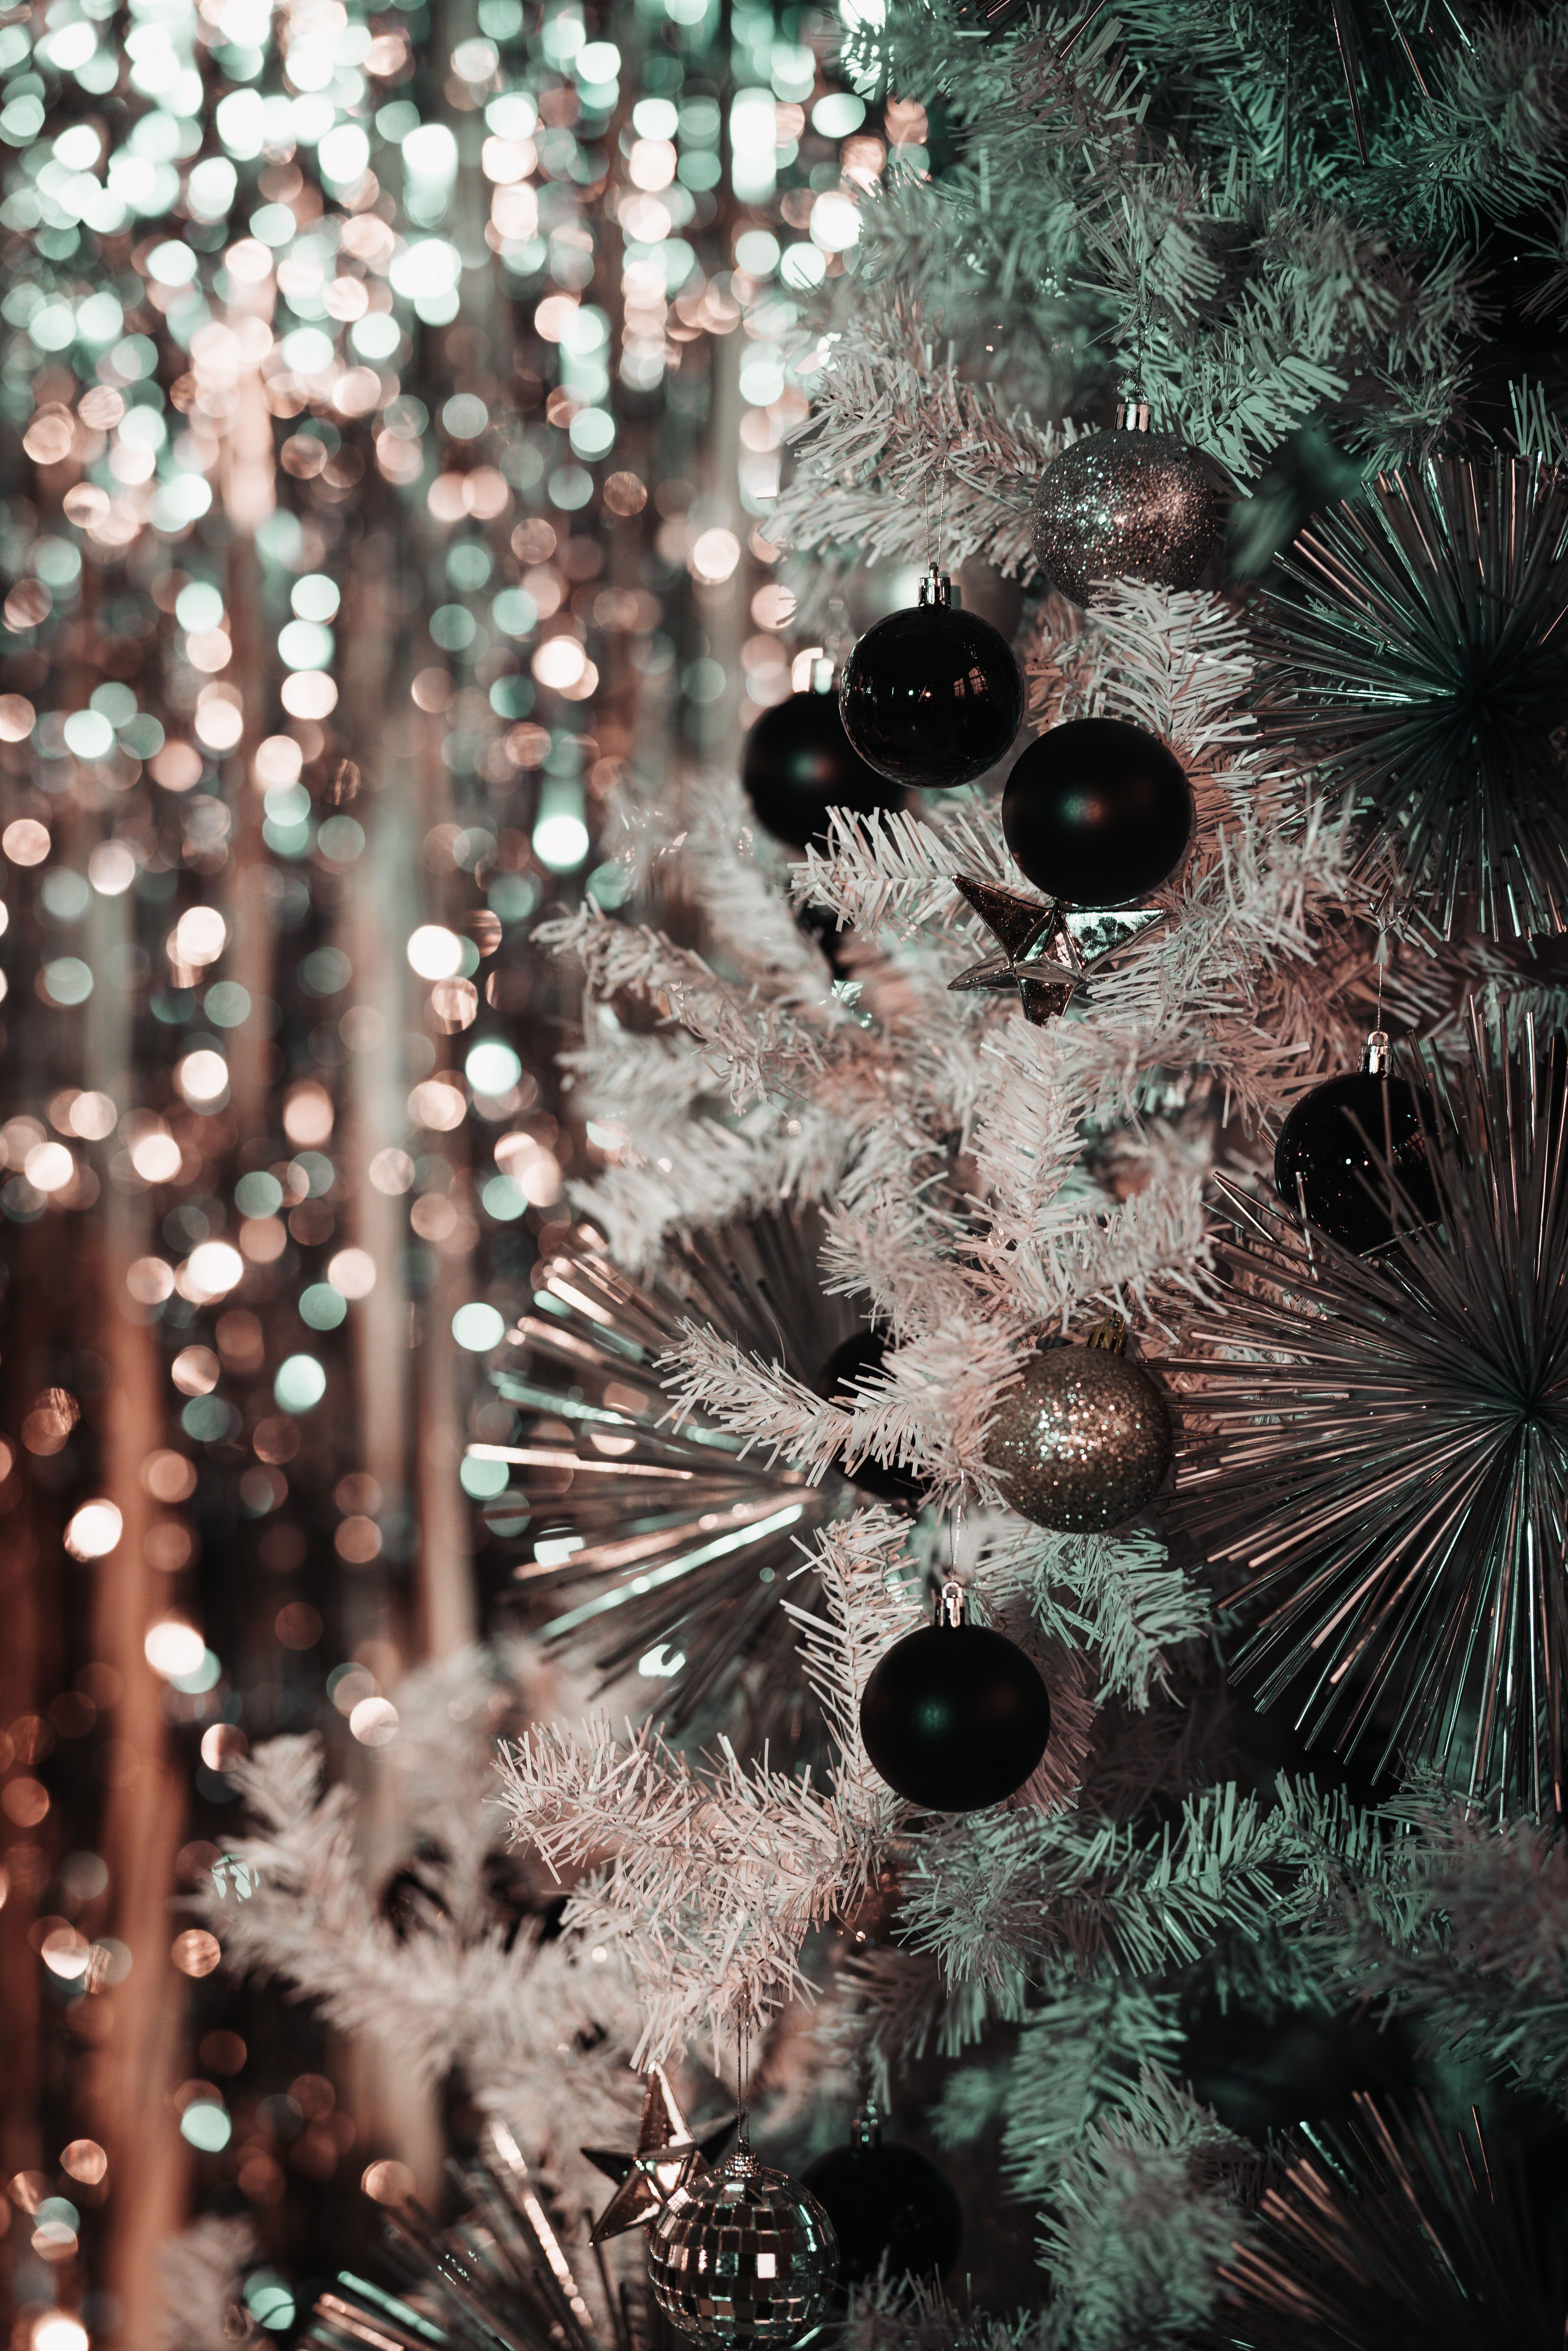  Weihnachtskugeln Hintergrundbild 5464x8192. Kostenloses Foto zum Thema: dekoration, farbe, feier, nahansicht, weihnachten, weihnachtsbaum, weihnachtsbeleuchtung, weihnachtsdekoration, weihnachtskugeln, weihnachtsschmuck